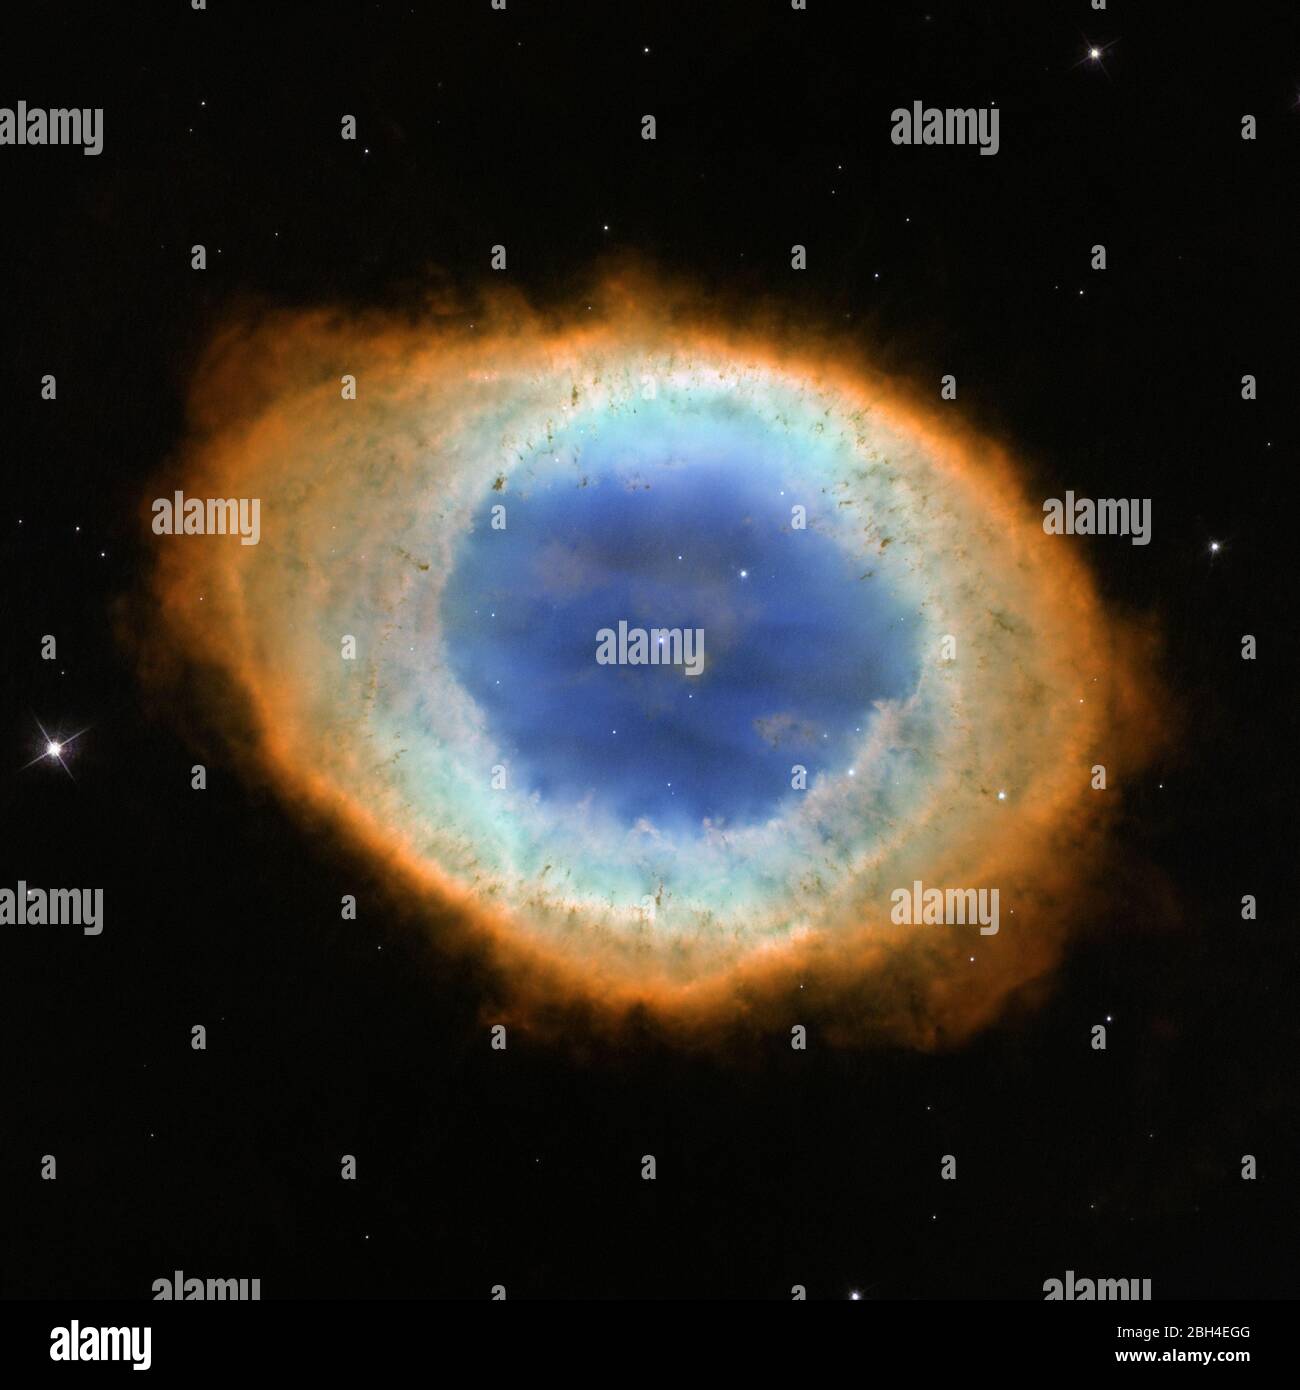 Washington, Usa. April 2020. Dieses Bild zeigt die dramatische Form und Farbe des Ringnebels, auch Messier 57 genannt. Aus Sicht der Erde sieht der Nebel aus wie eine einfache elliptische Form mit einer zottigen Grenze. Beobachtungen, die vorhandene bodenbasierte Daten mit neuen Daten des NASA/ESA Hubble Space Telescope kombinieren, zeigen jedoch, dass der Nebel wie ein verzerrter Donut geformt ist. Stockfoto